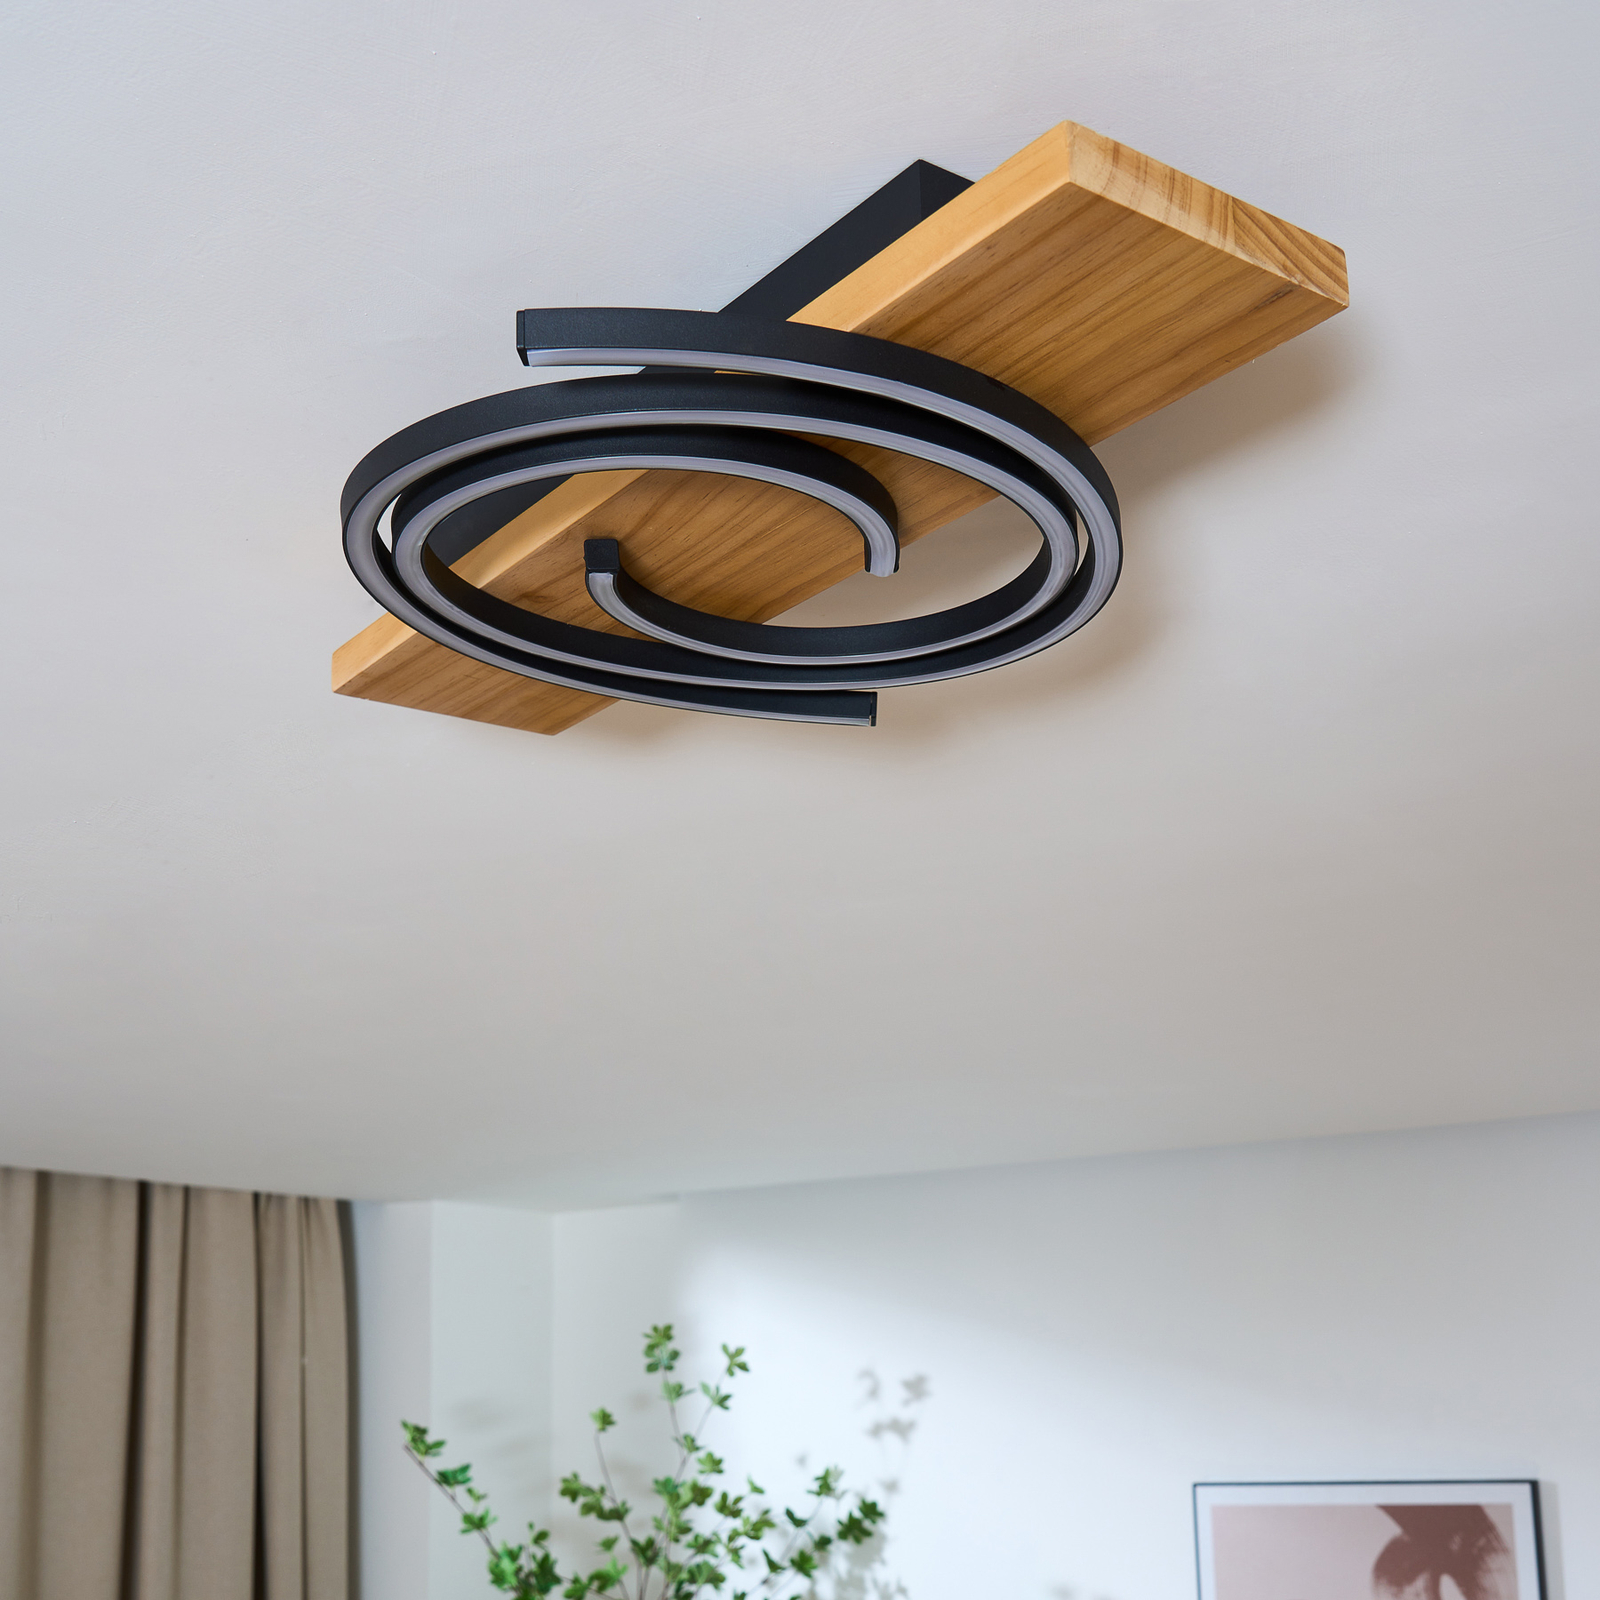 LED-Deckenleuchte Rifia, braun, Länge 50 cm, Holz